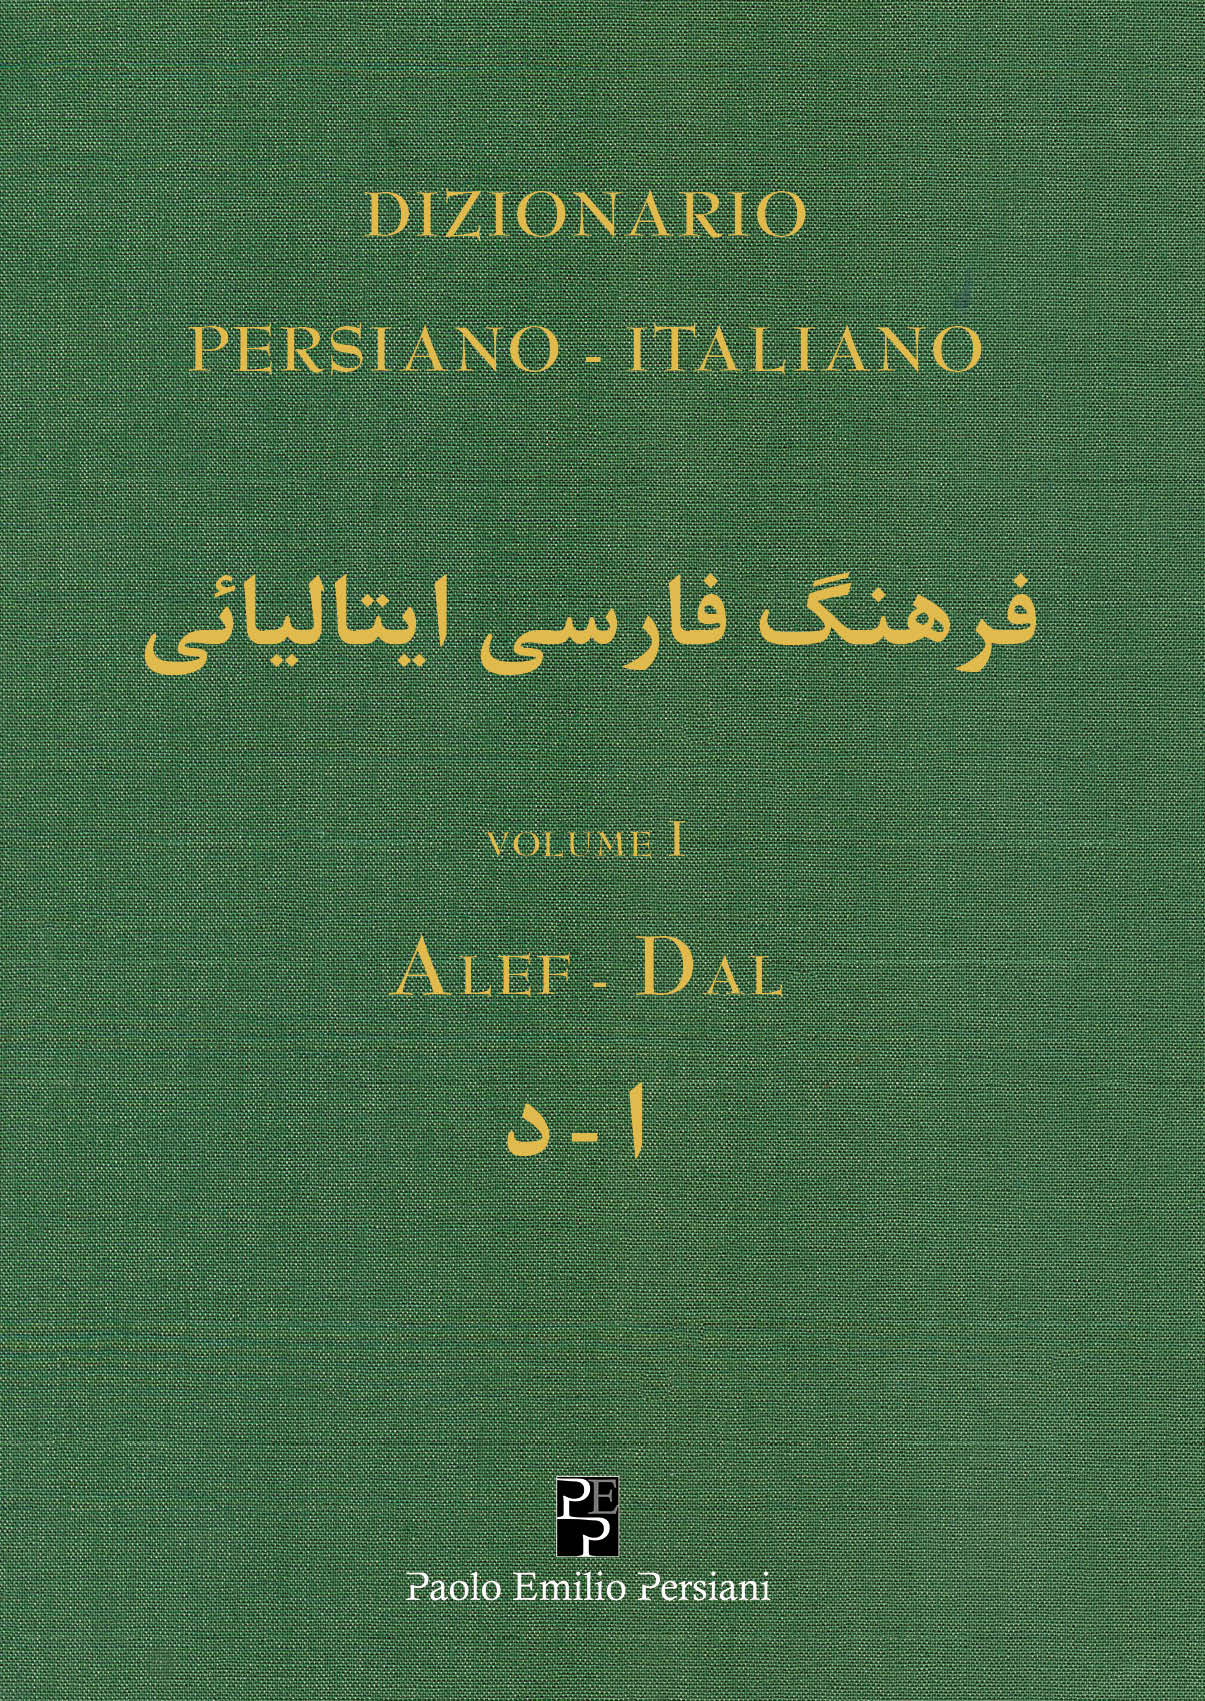 Dizionario Persiano – Italiano